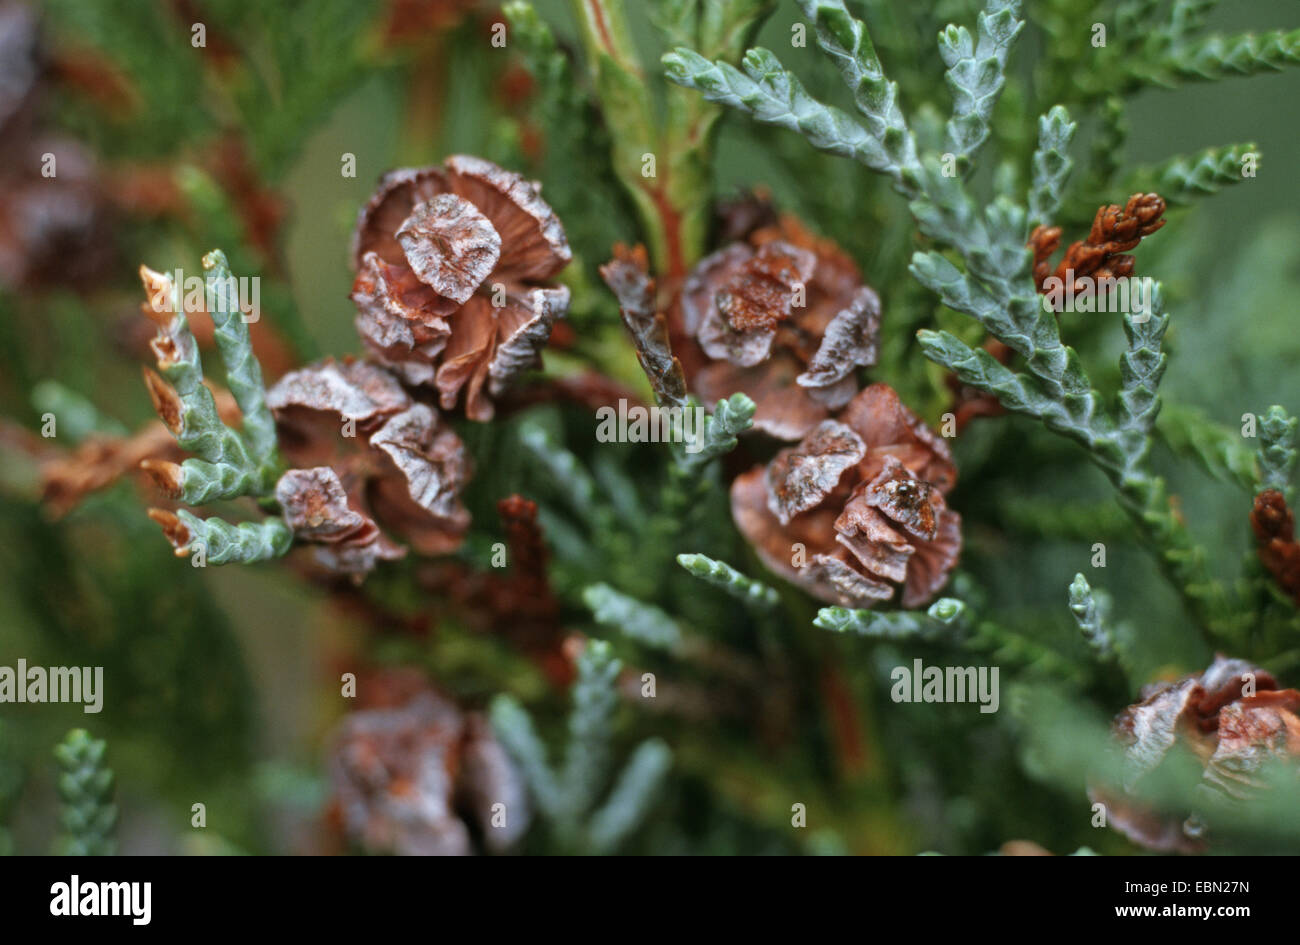 Lawson cypress, Port Orford cedar (Chamaecyparis lawsoniana), cones at a twig Stock Photo